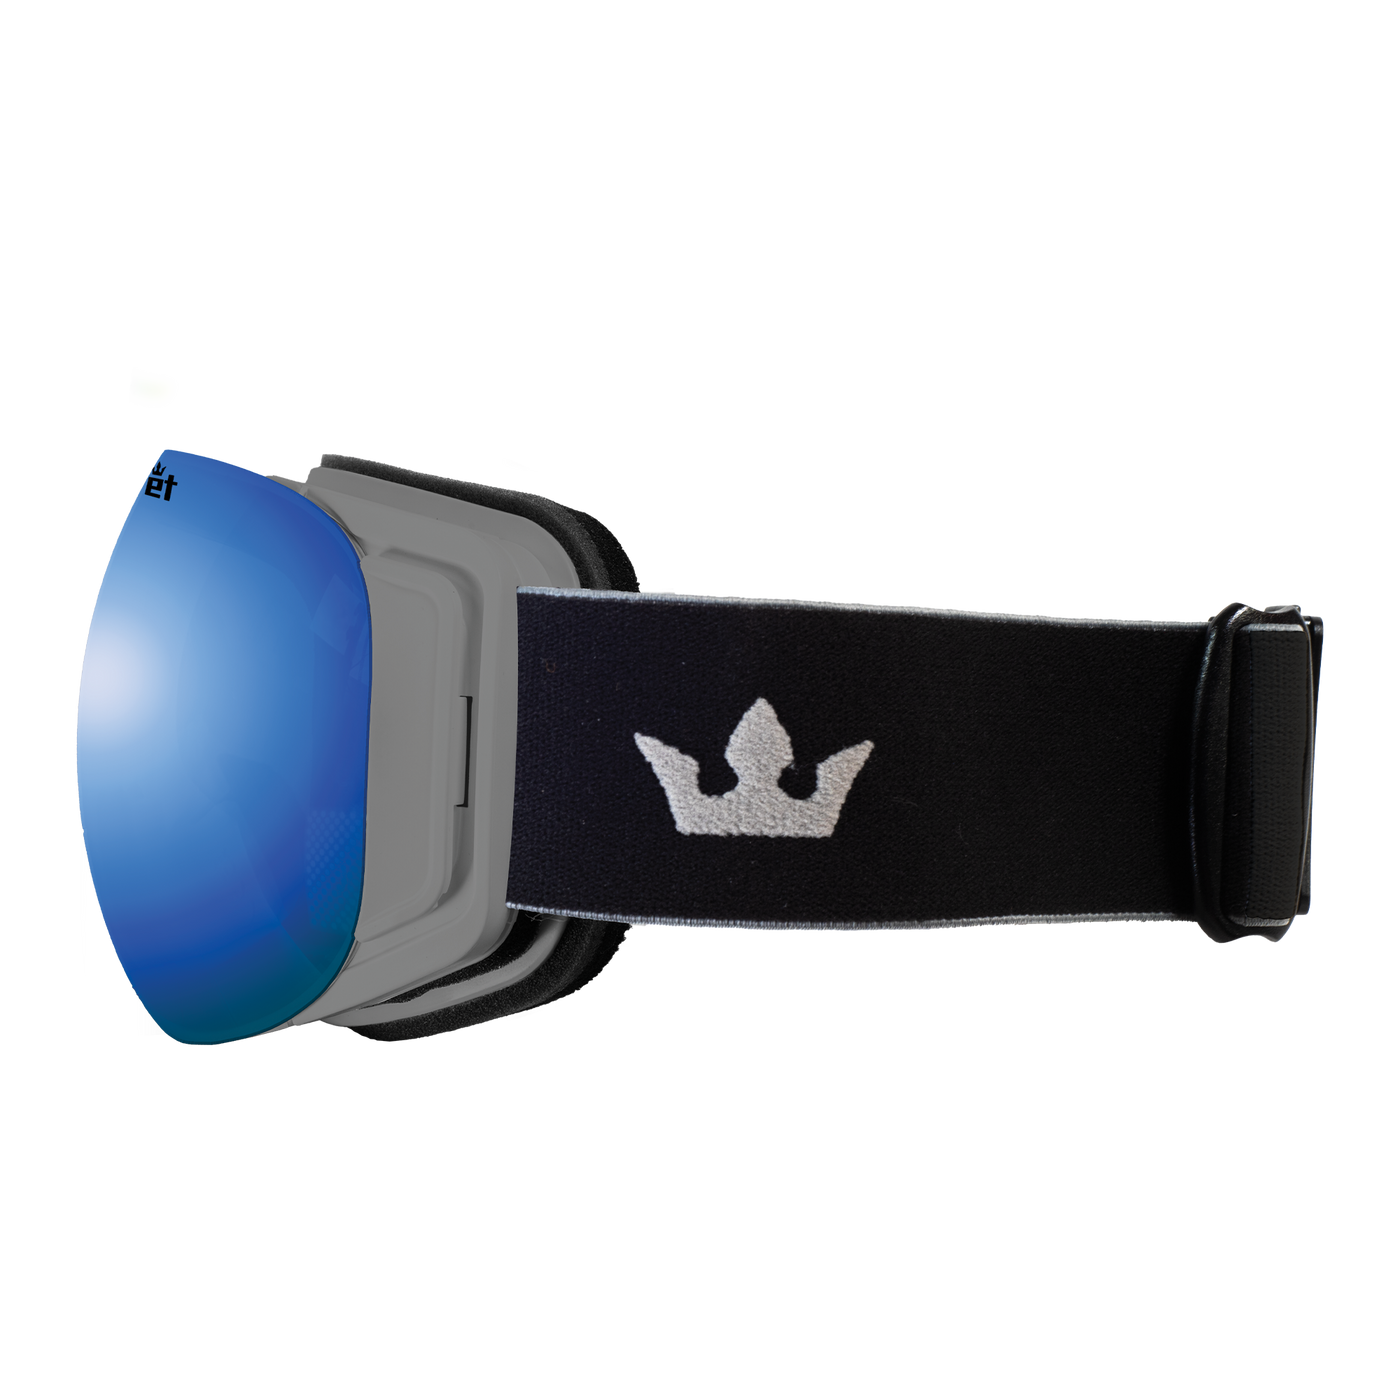 S Goggle - Blue Mirror Photochromic Lens